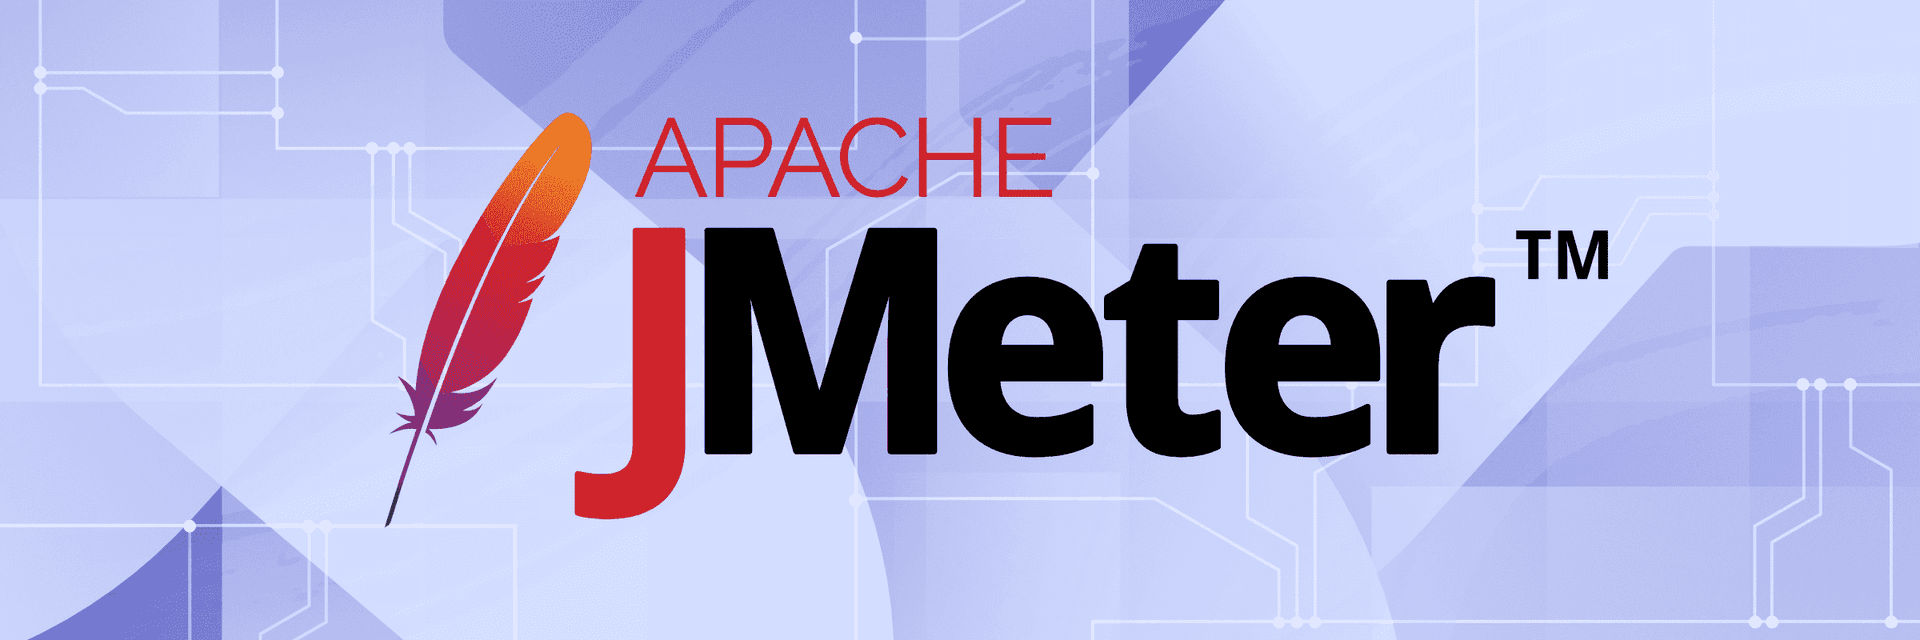 New action: Apache JMeter